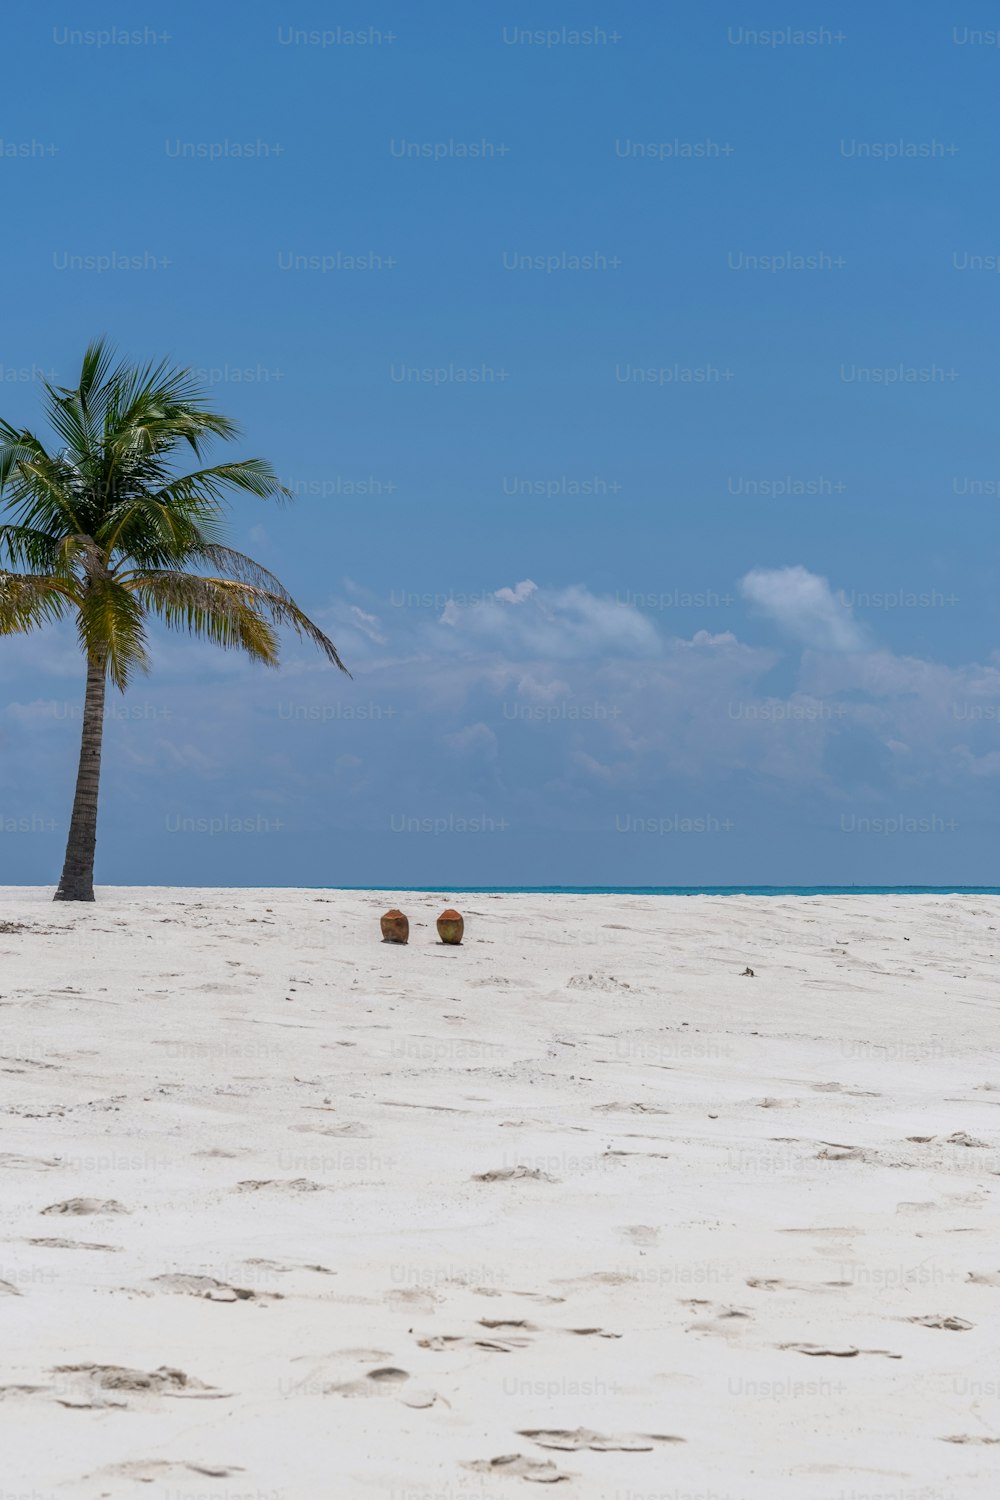 Una palmera en una playa con huellas en la arena